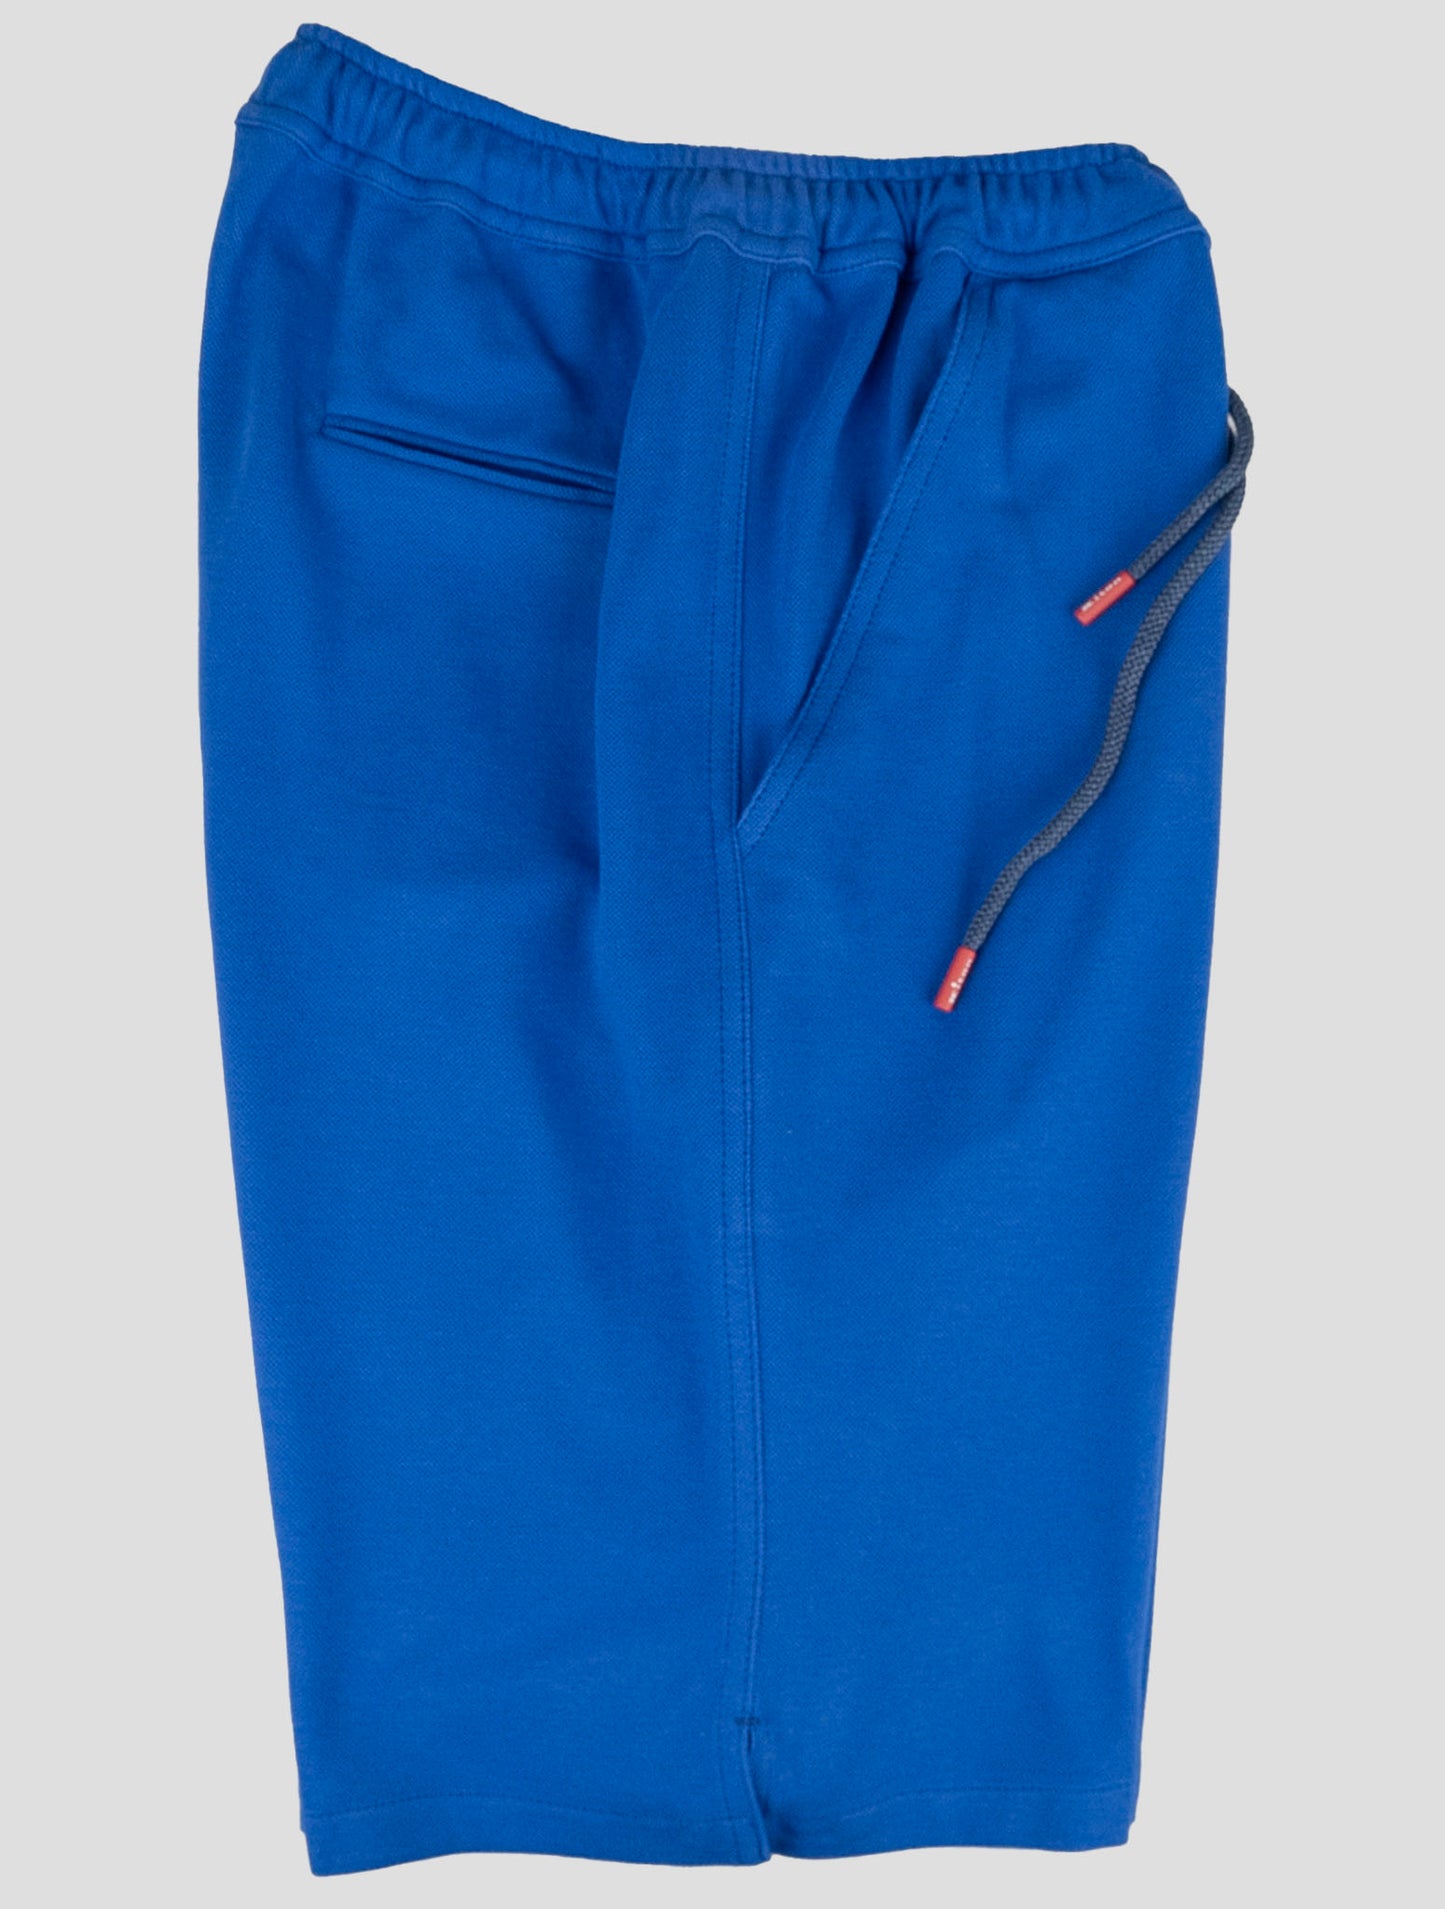 קיטון התאמת בגד-אפור מריאנו וכחול מכנסיים קצרים כחולים